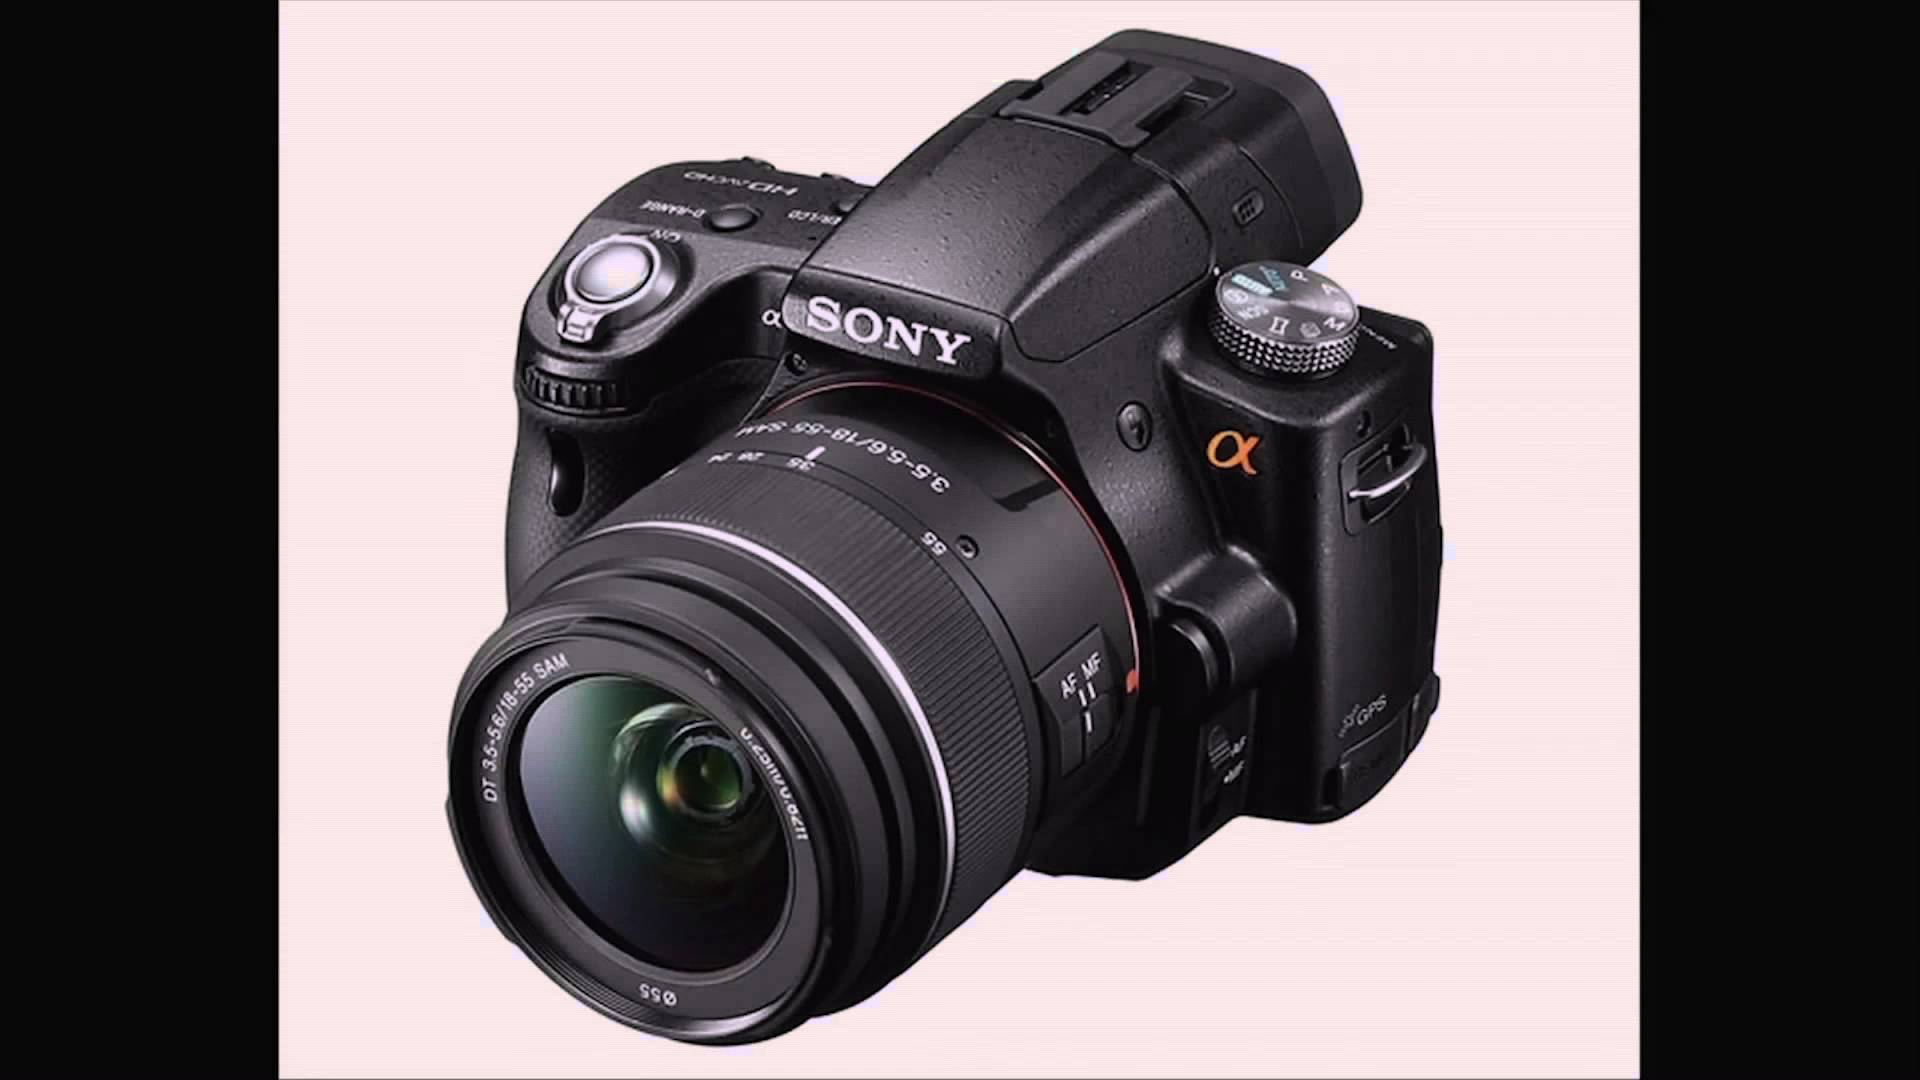 Top 4 Digital SLR Cameras Under $1000 DSLR Reviews